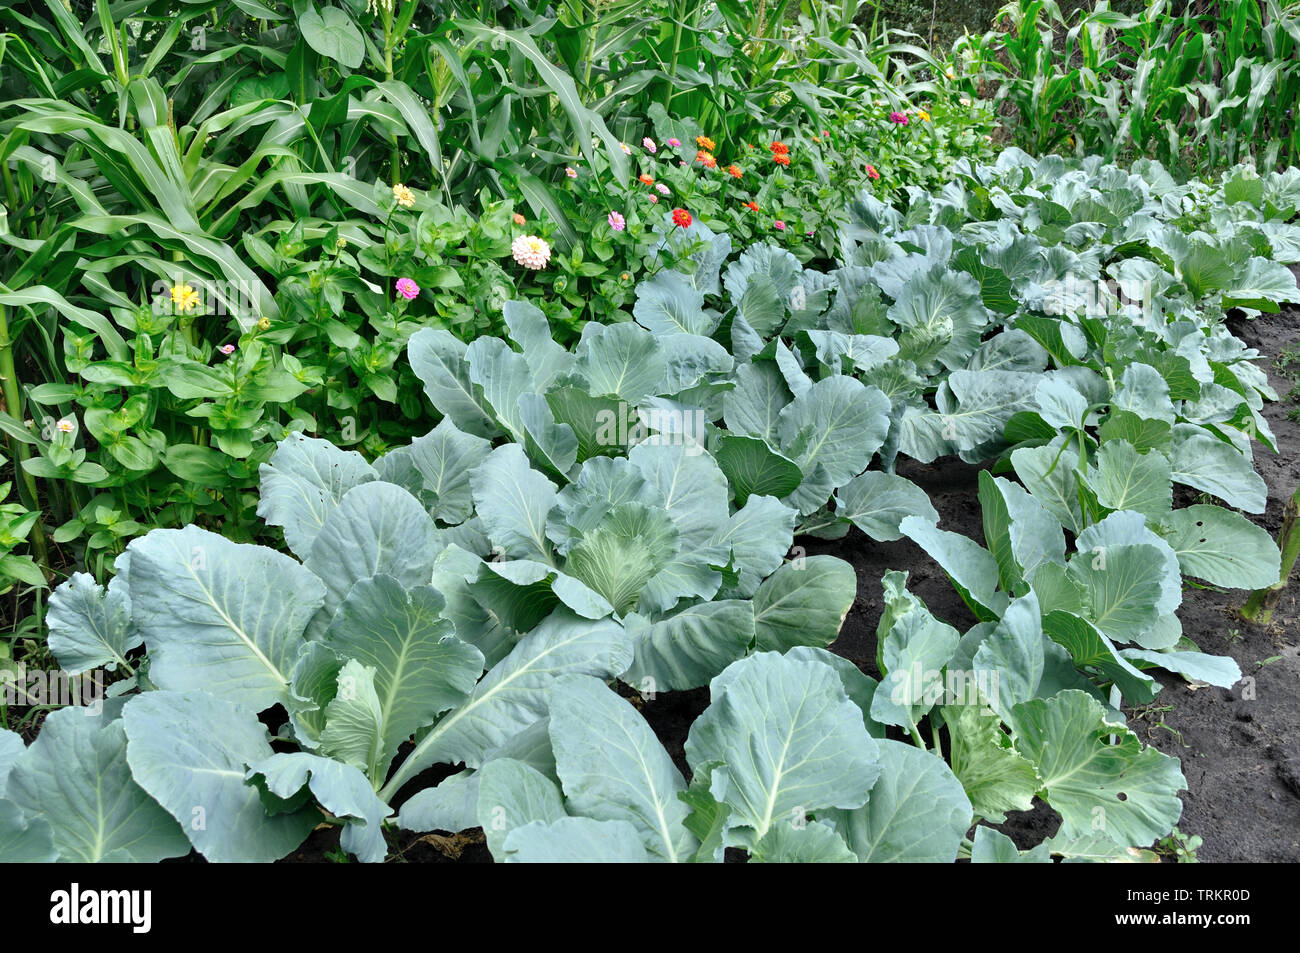 Varias verduras cultivadas orgánicamente en la huerta Foto de stock